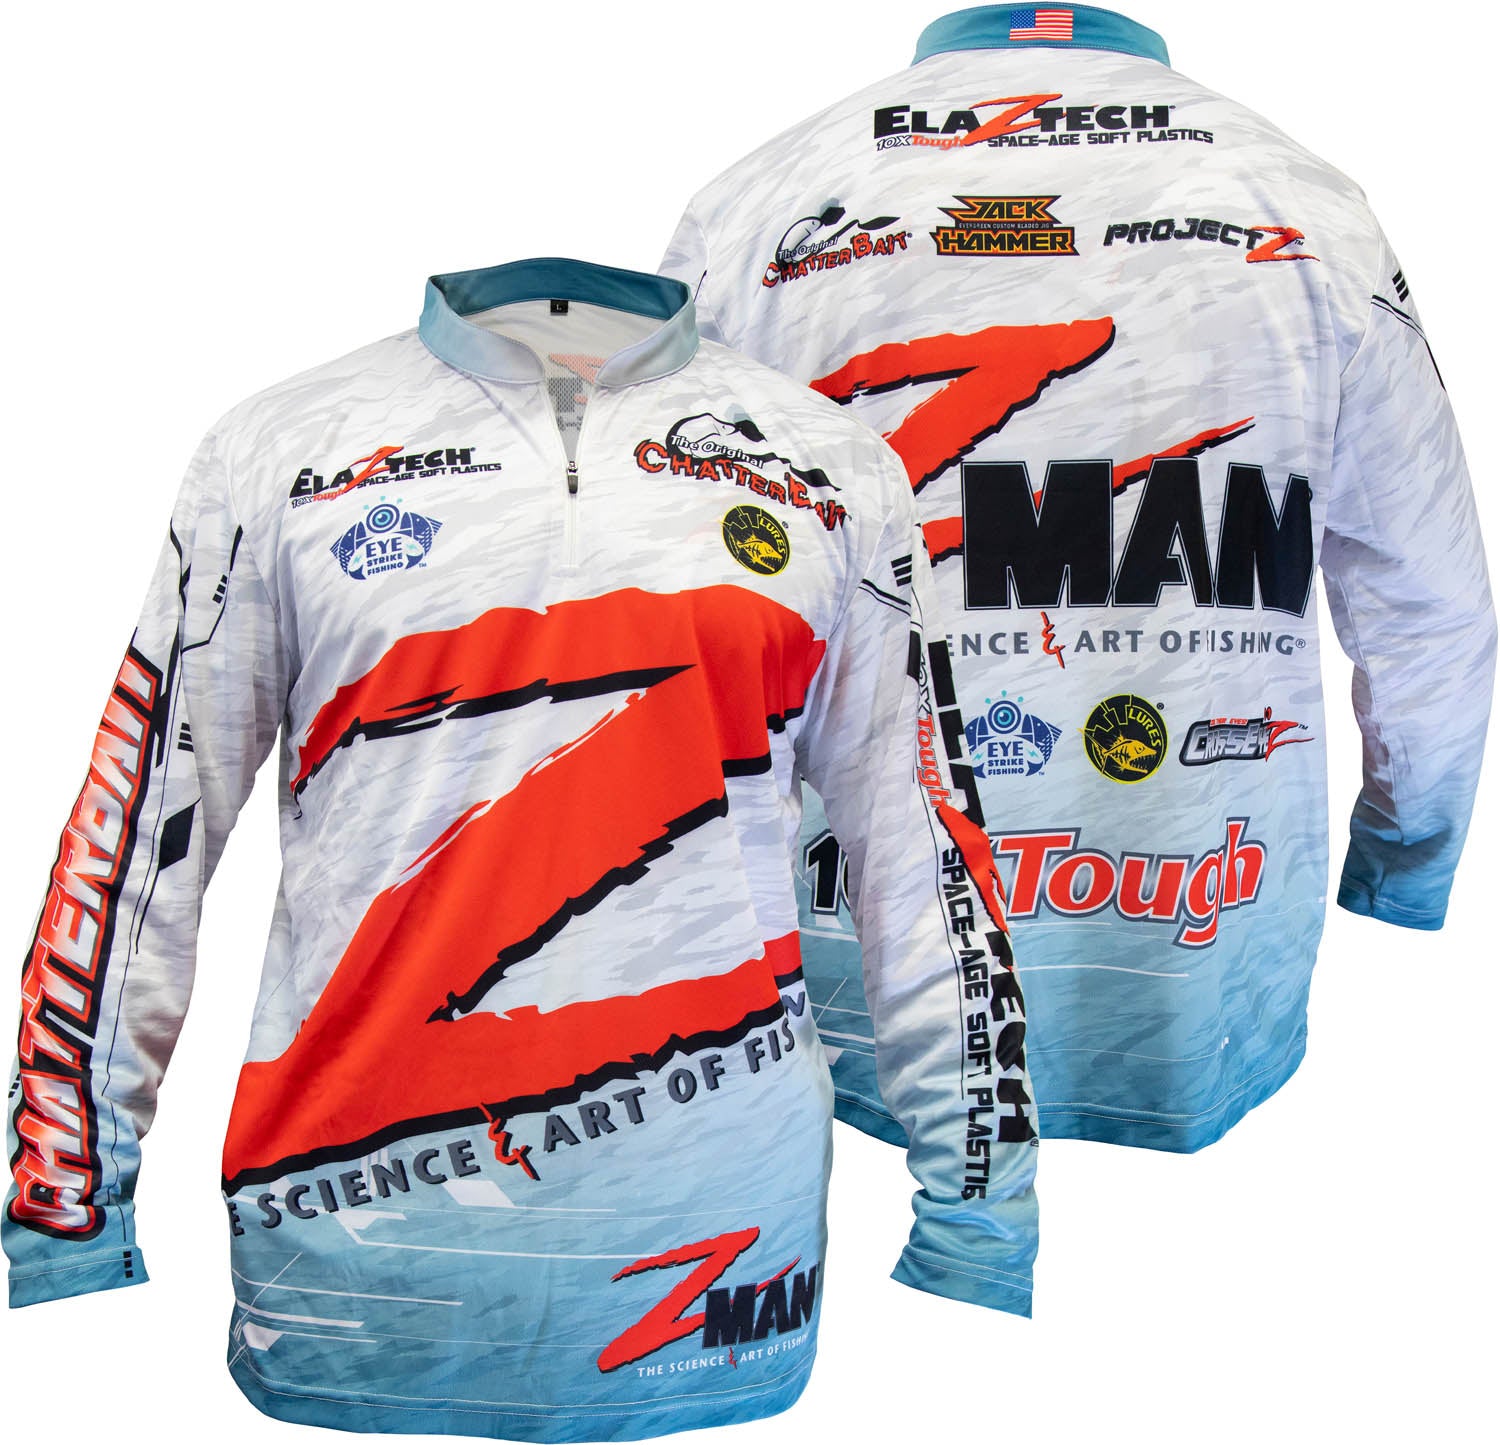 Pro Shop Fishing Jersey Bass Rapala Shirt Zip Jersey Tee Shirt